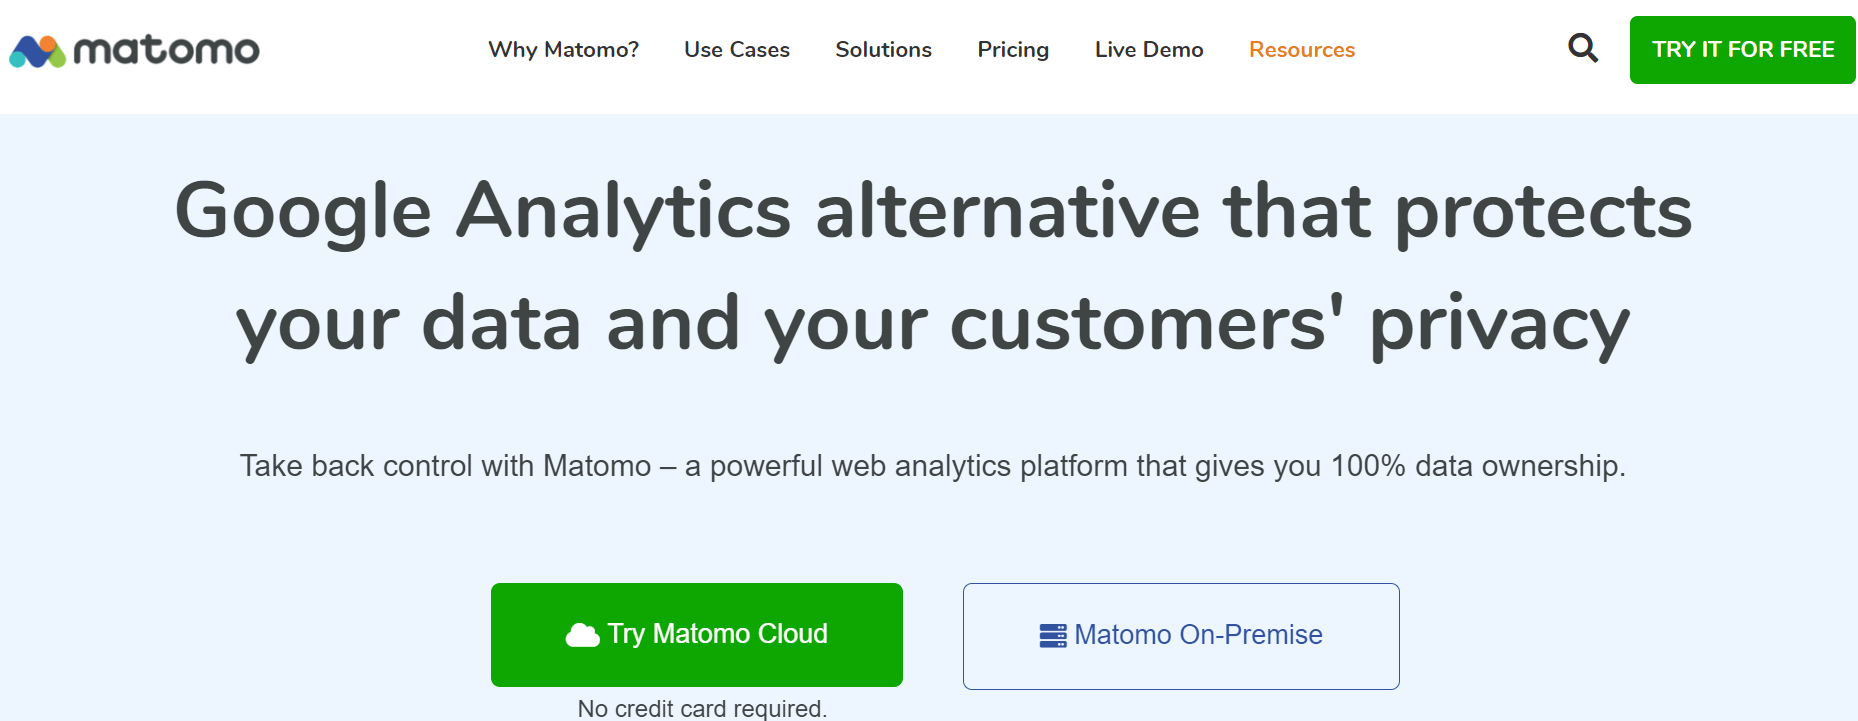 Matomo 是一個優秀的谷歌分析替代品。